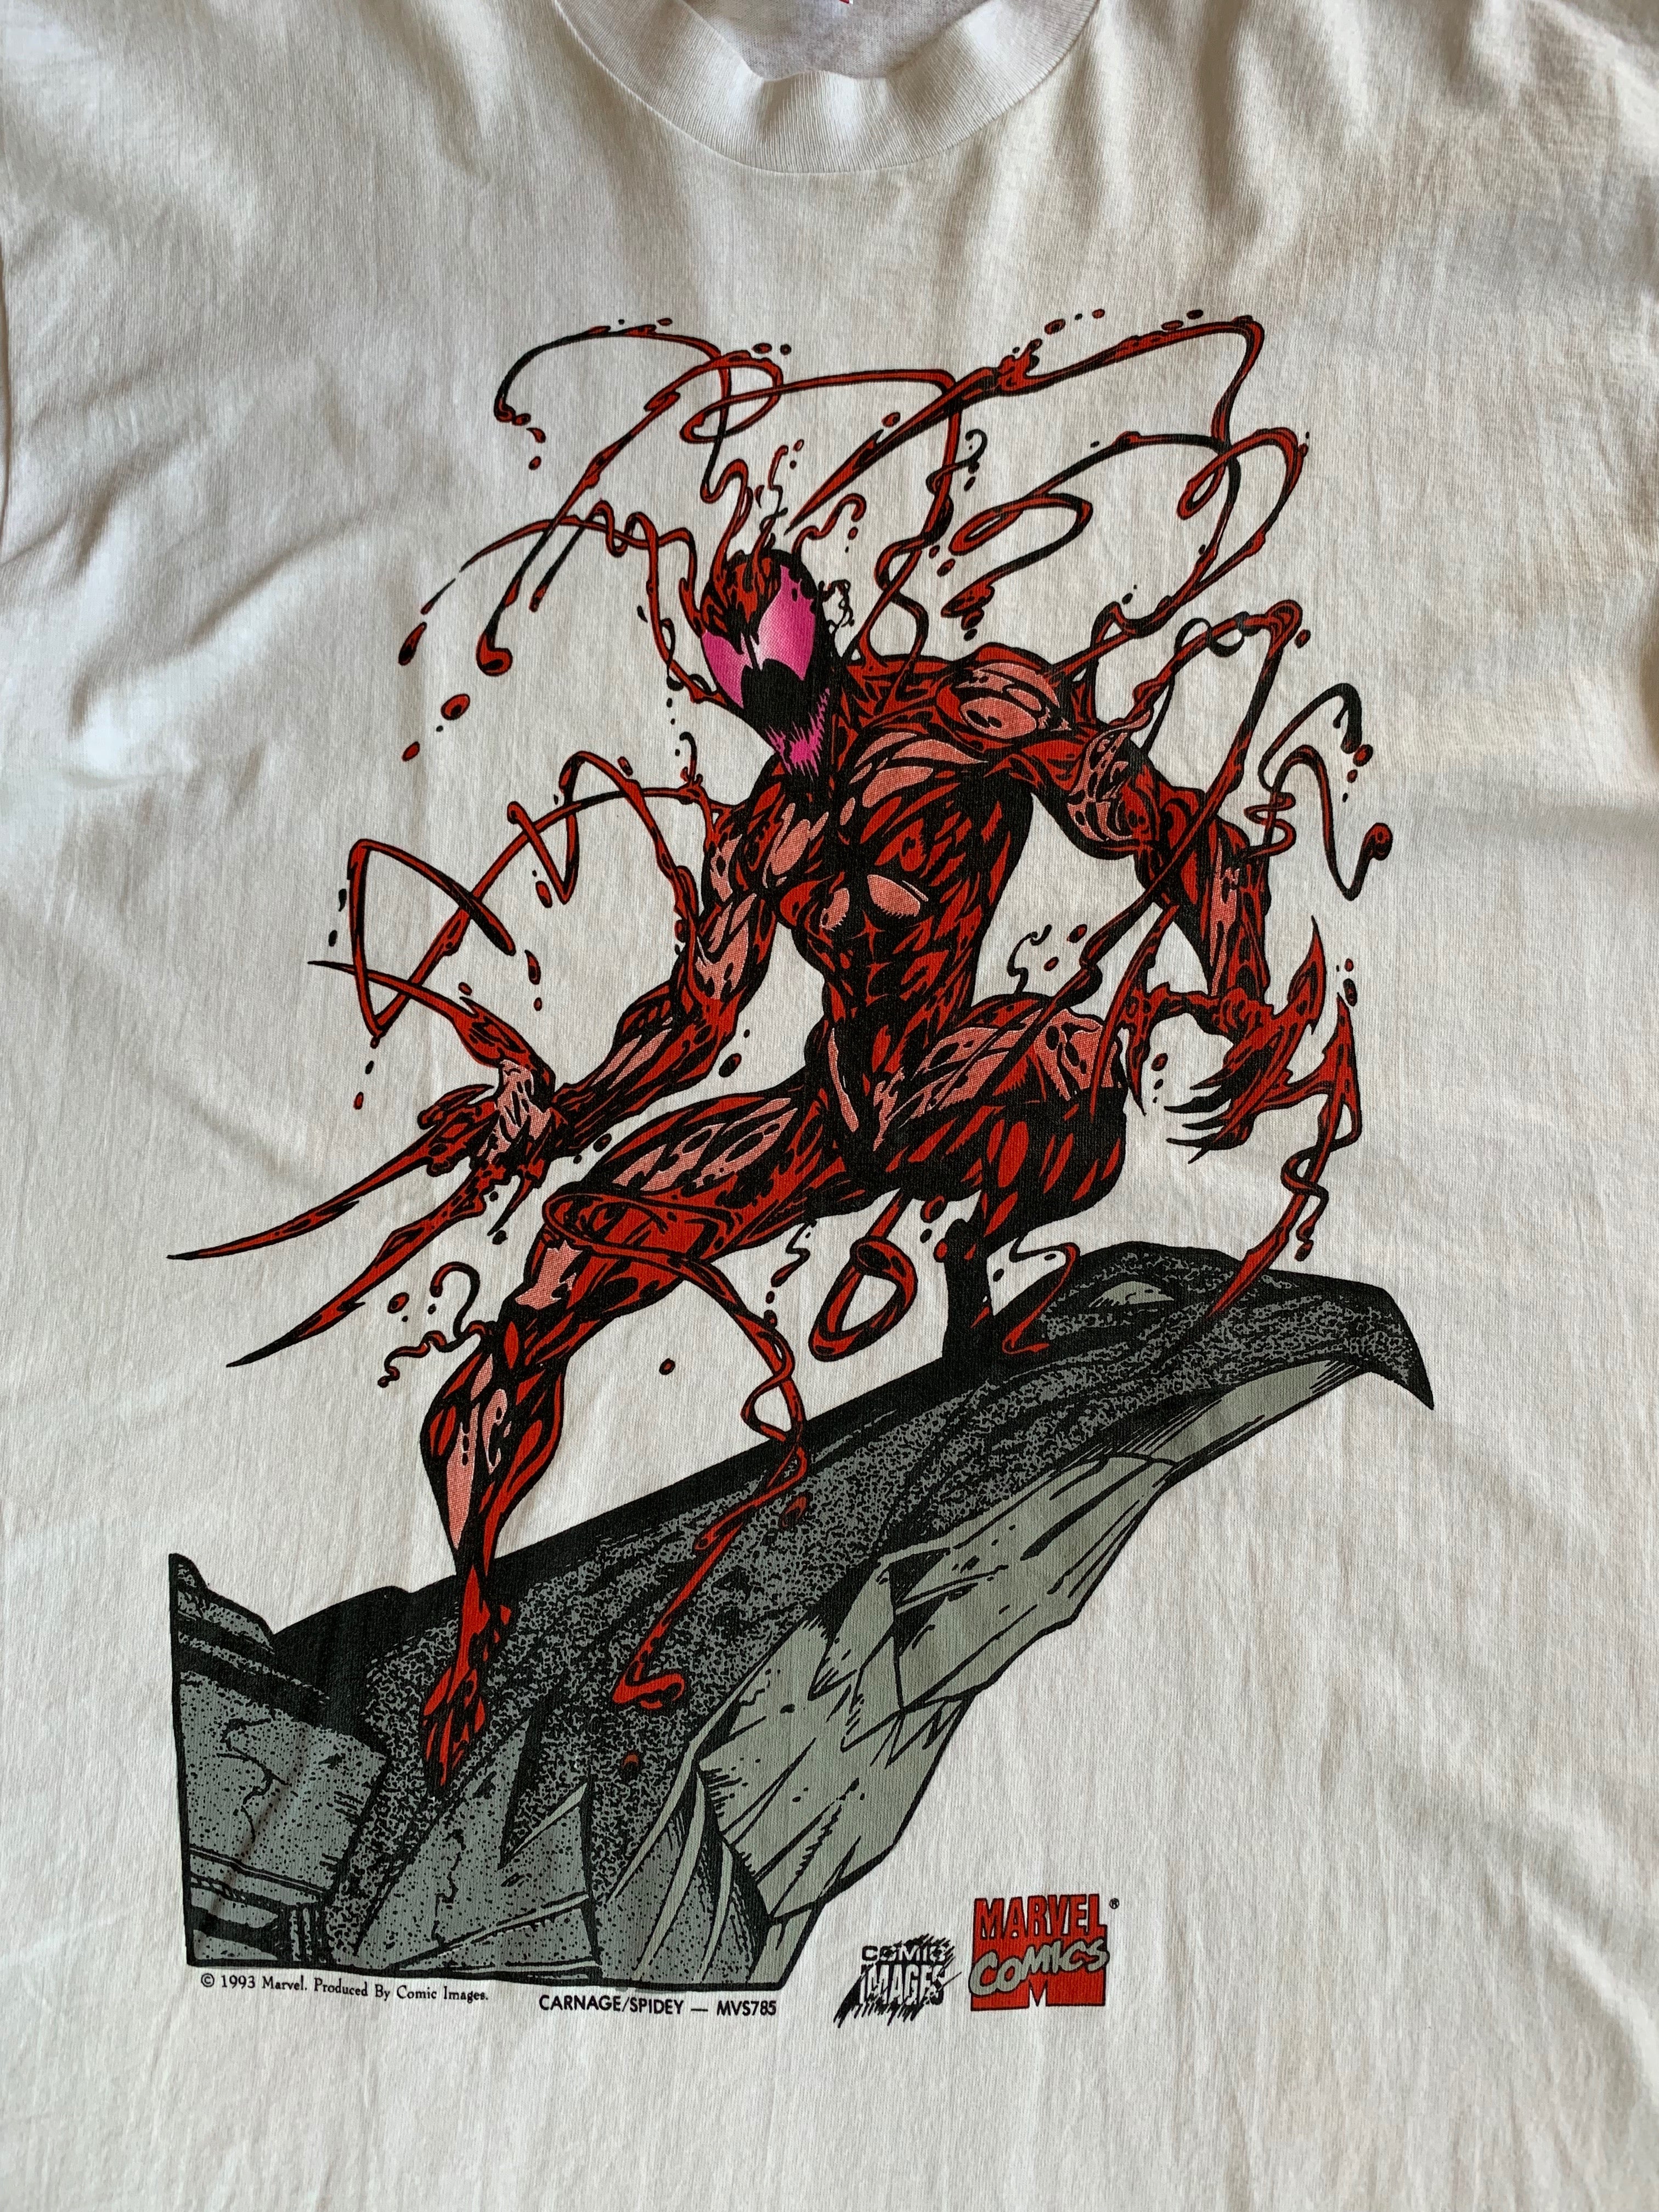 Vintage 1993 Marvel Carnage/Spidey T-Shirt - XL